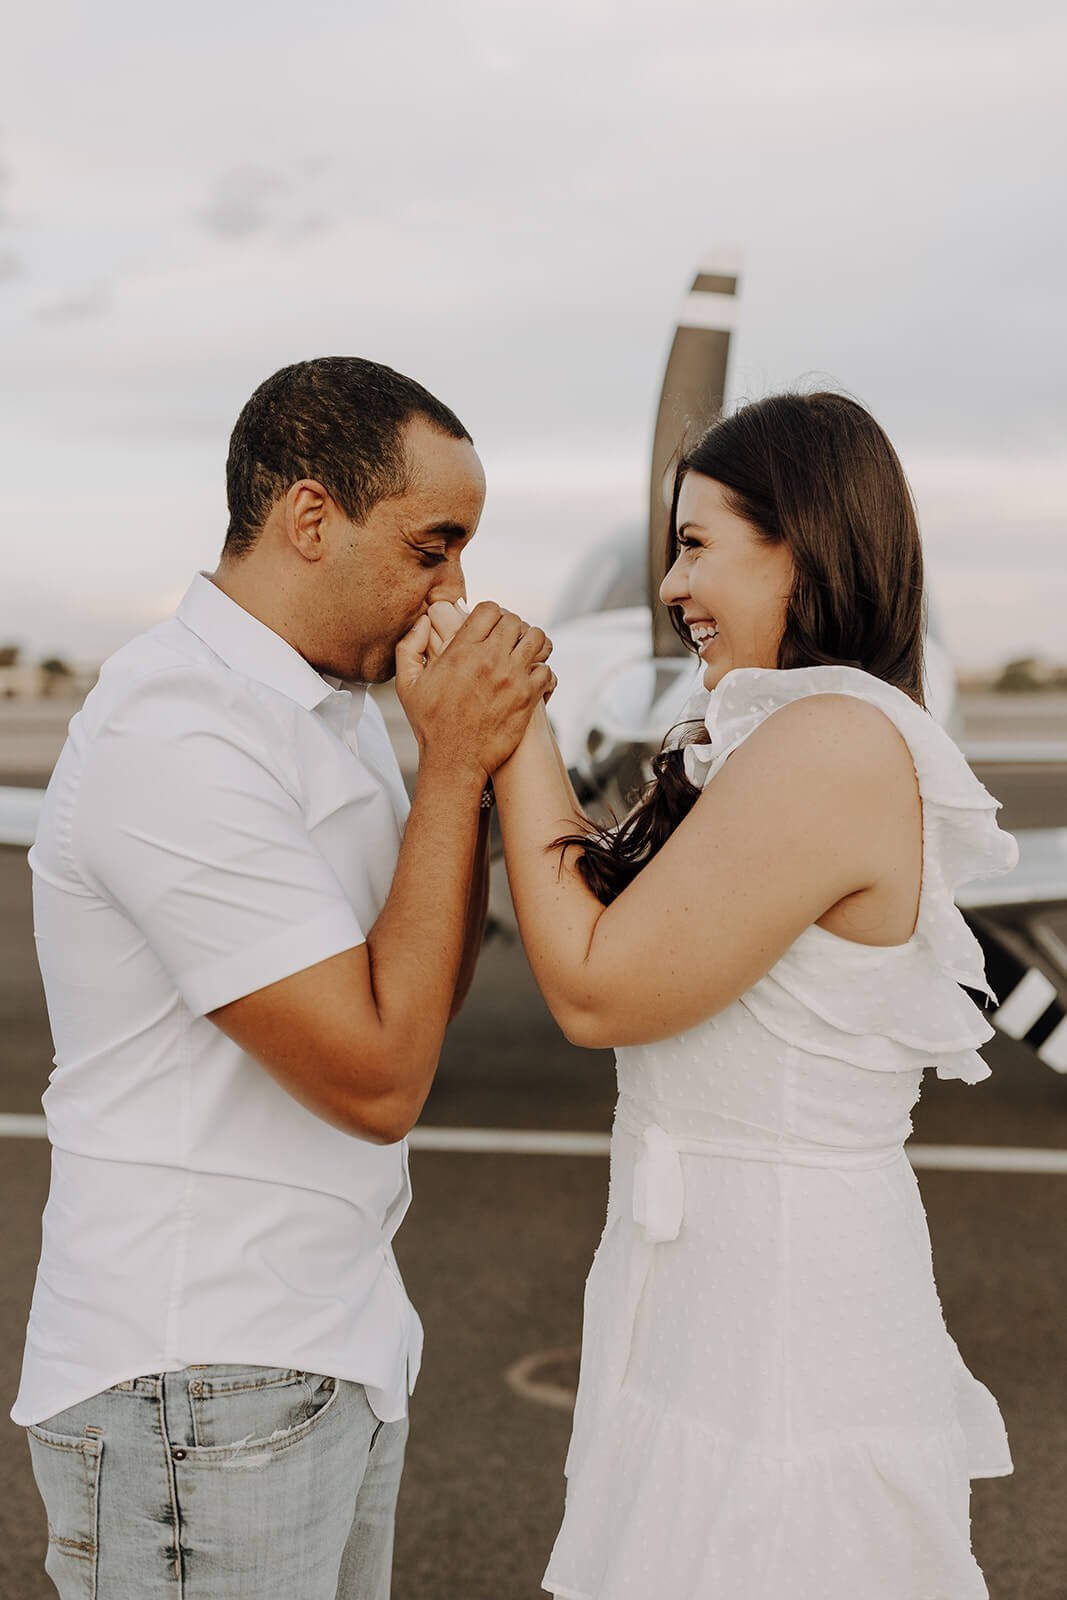 Man kisses woman's hands during unique engagement photos at Scottsdale airport